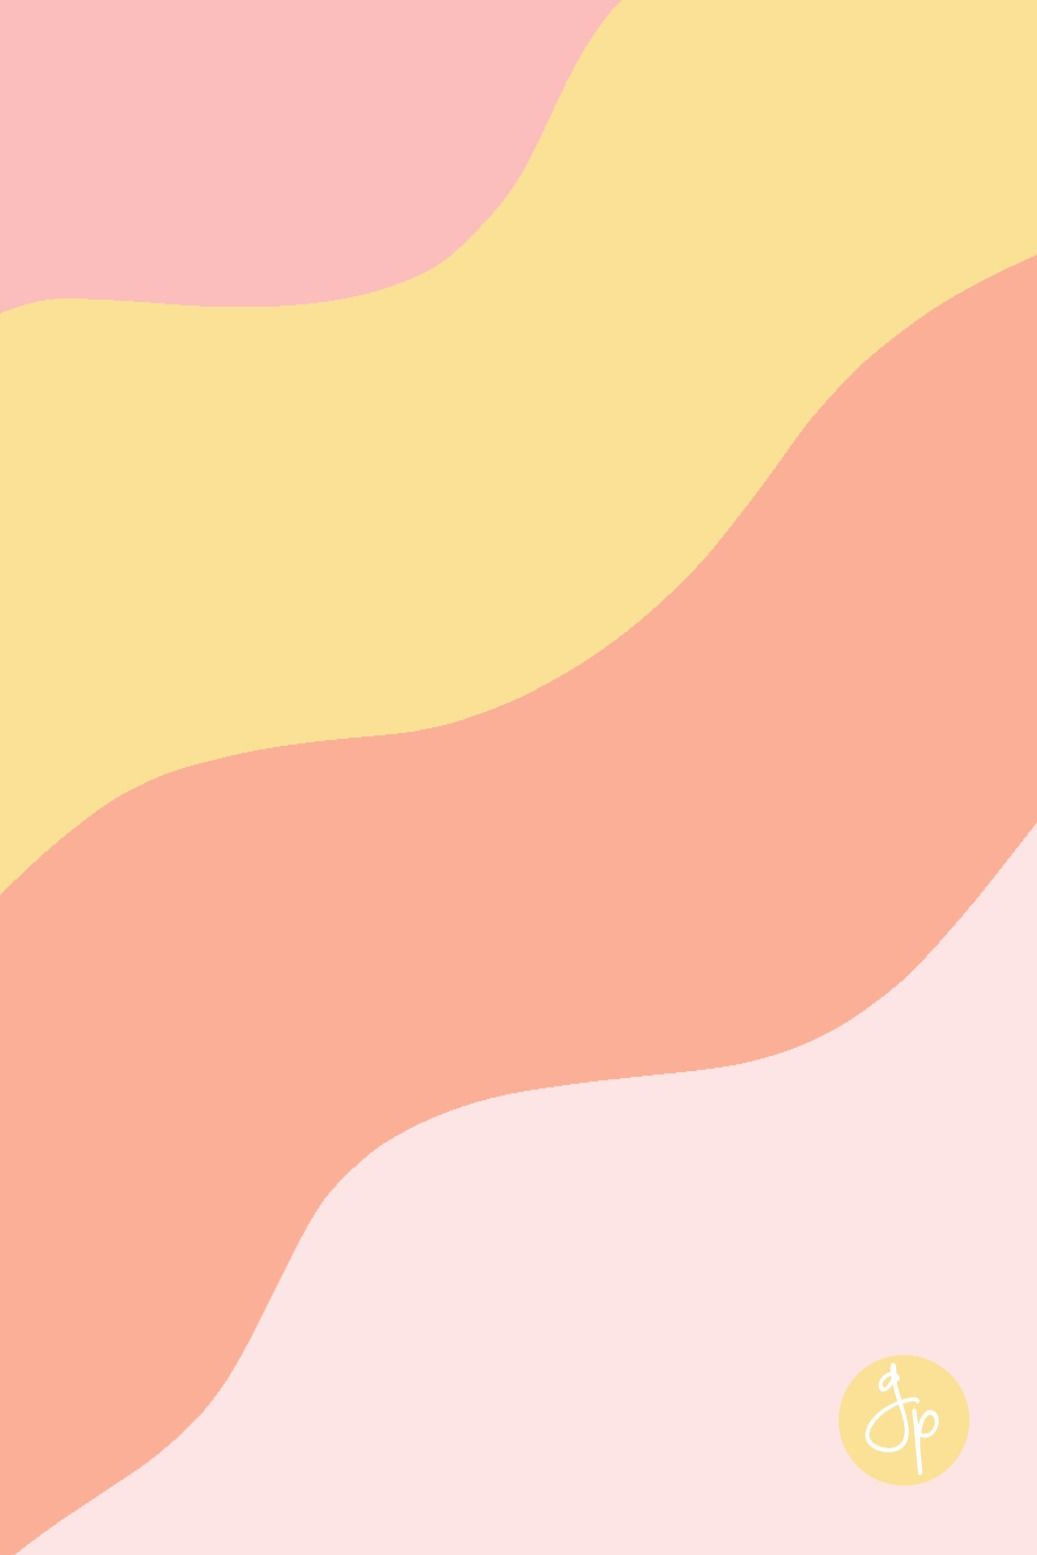 Free Wallpaper Print Download. Pink Pattern Background, Cute Patterns Wallpaper, Free Wallpaper